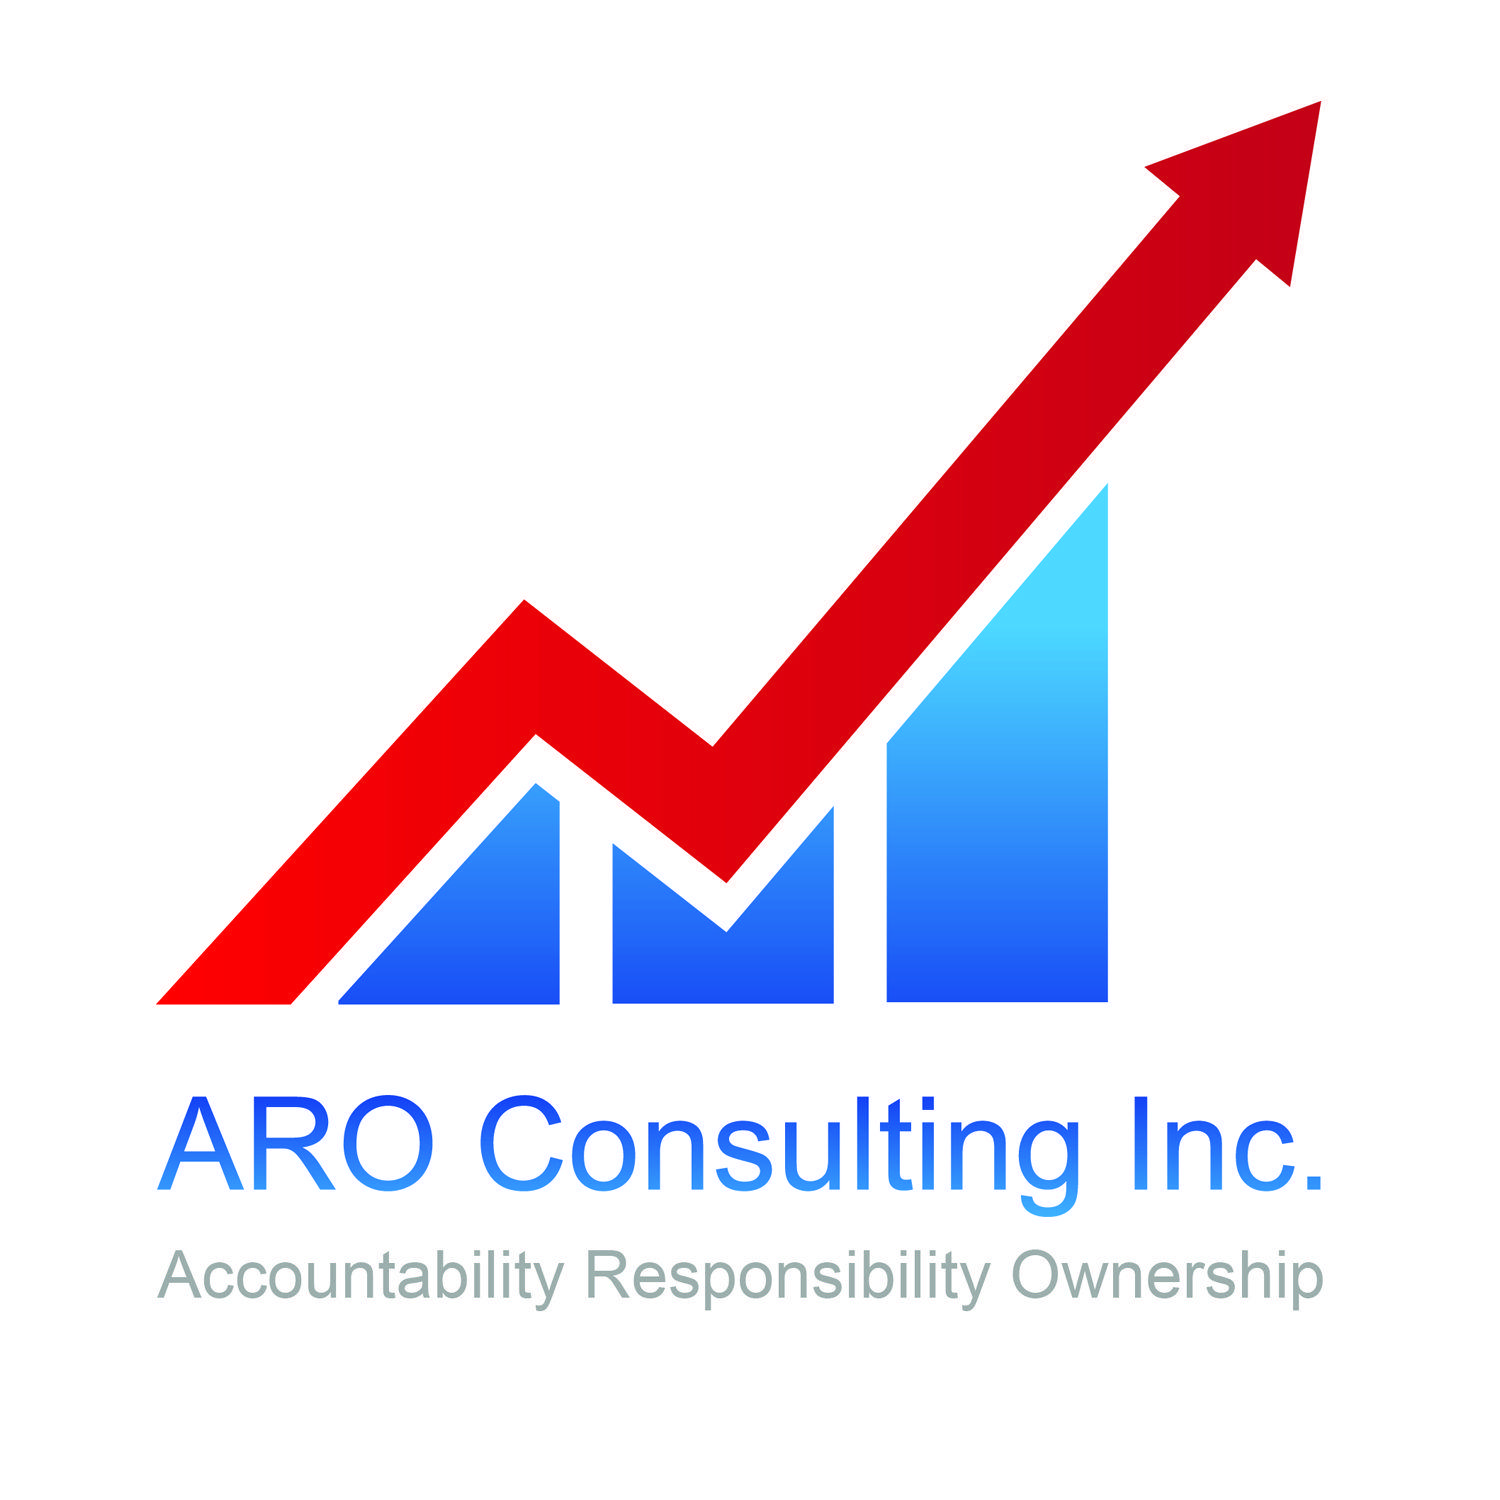 Aro Logo - Modern, Serious, Financial Service Logo Design for ARO Consulting ...